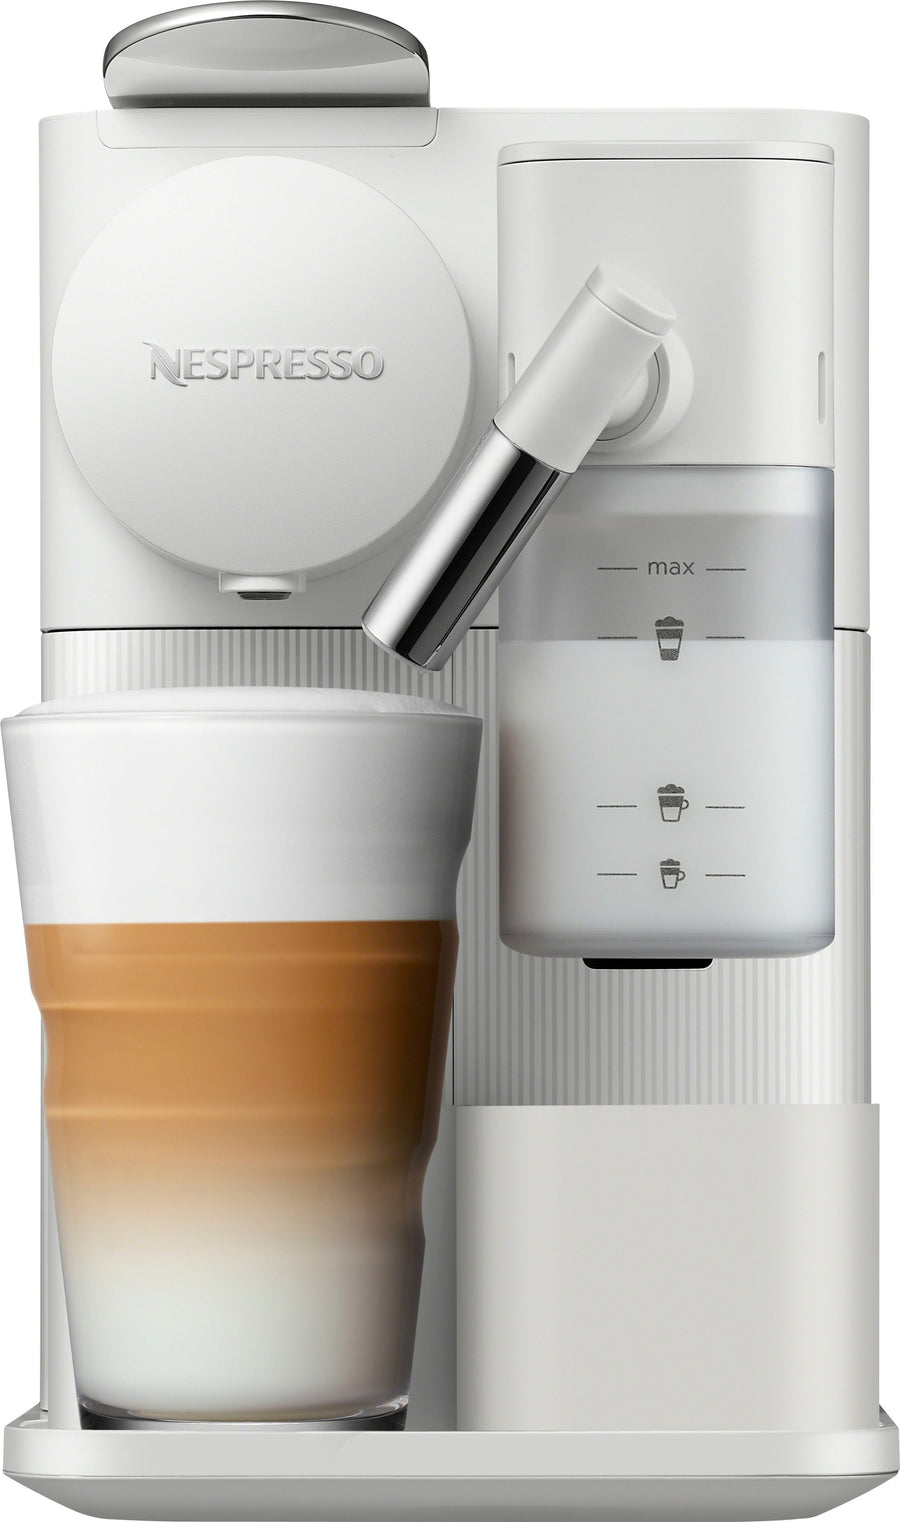 Nespresso Lattissima One Original Espresso Machine with Milk Frother by DeLonghi - White_0